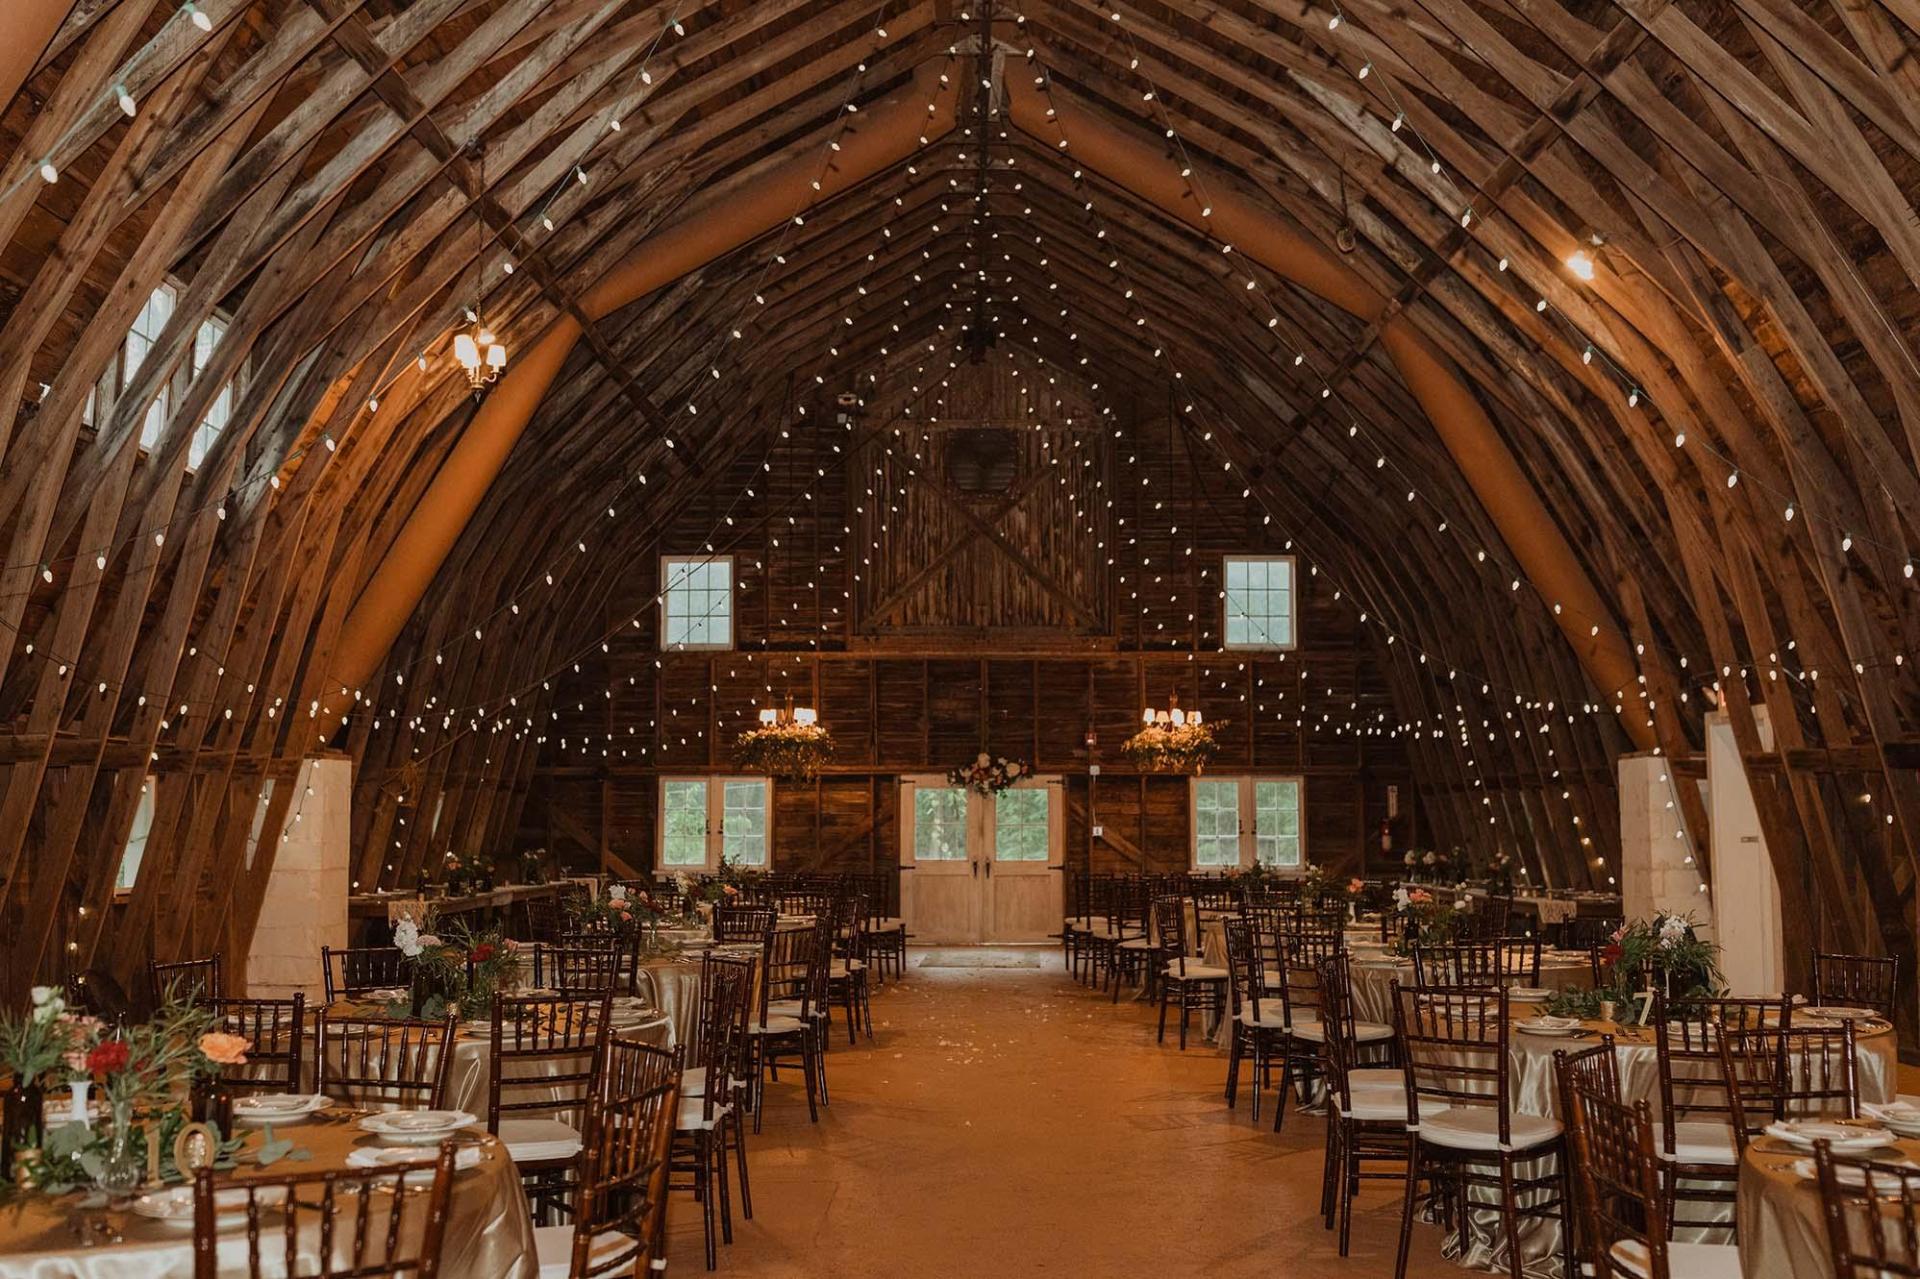 Interior or a barn wedding venue.